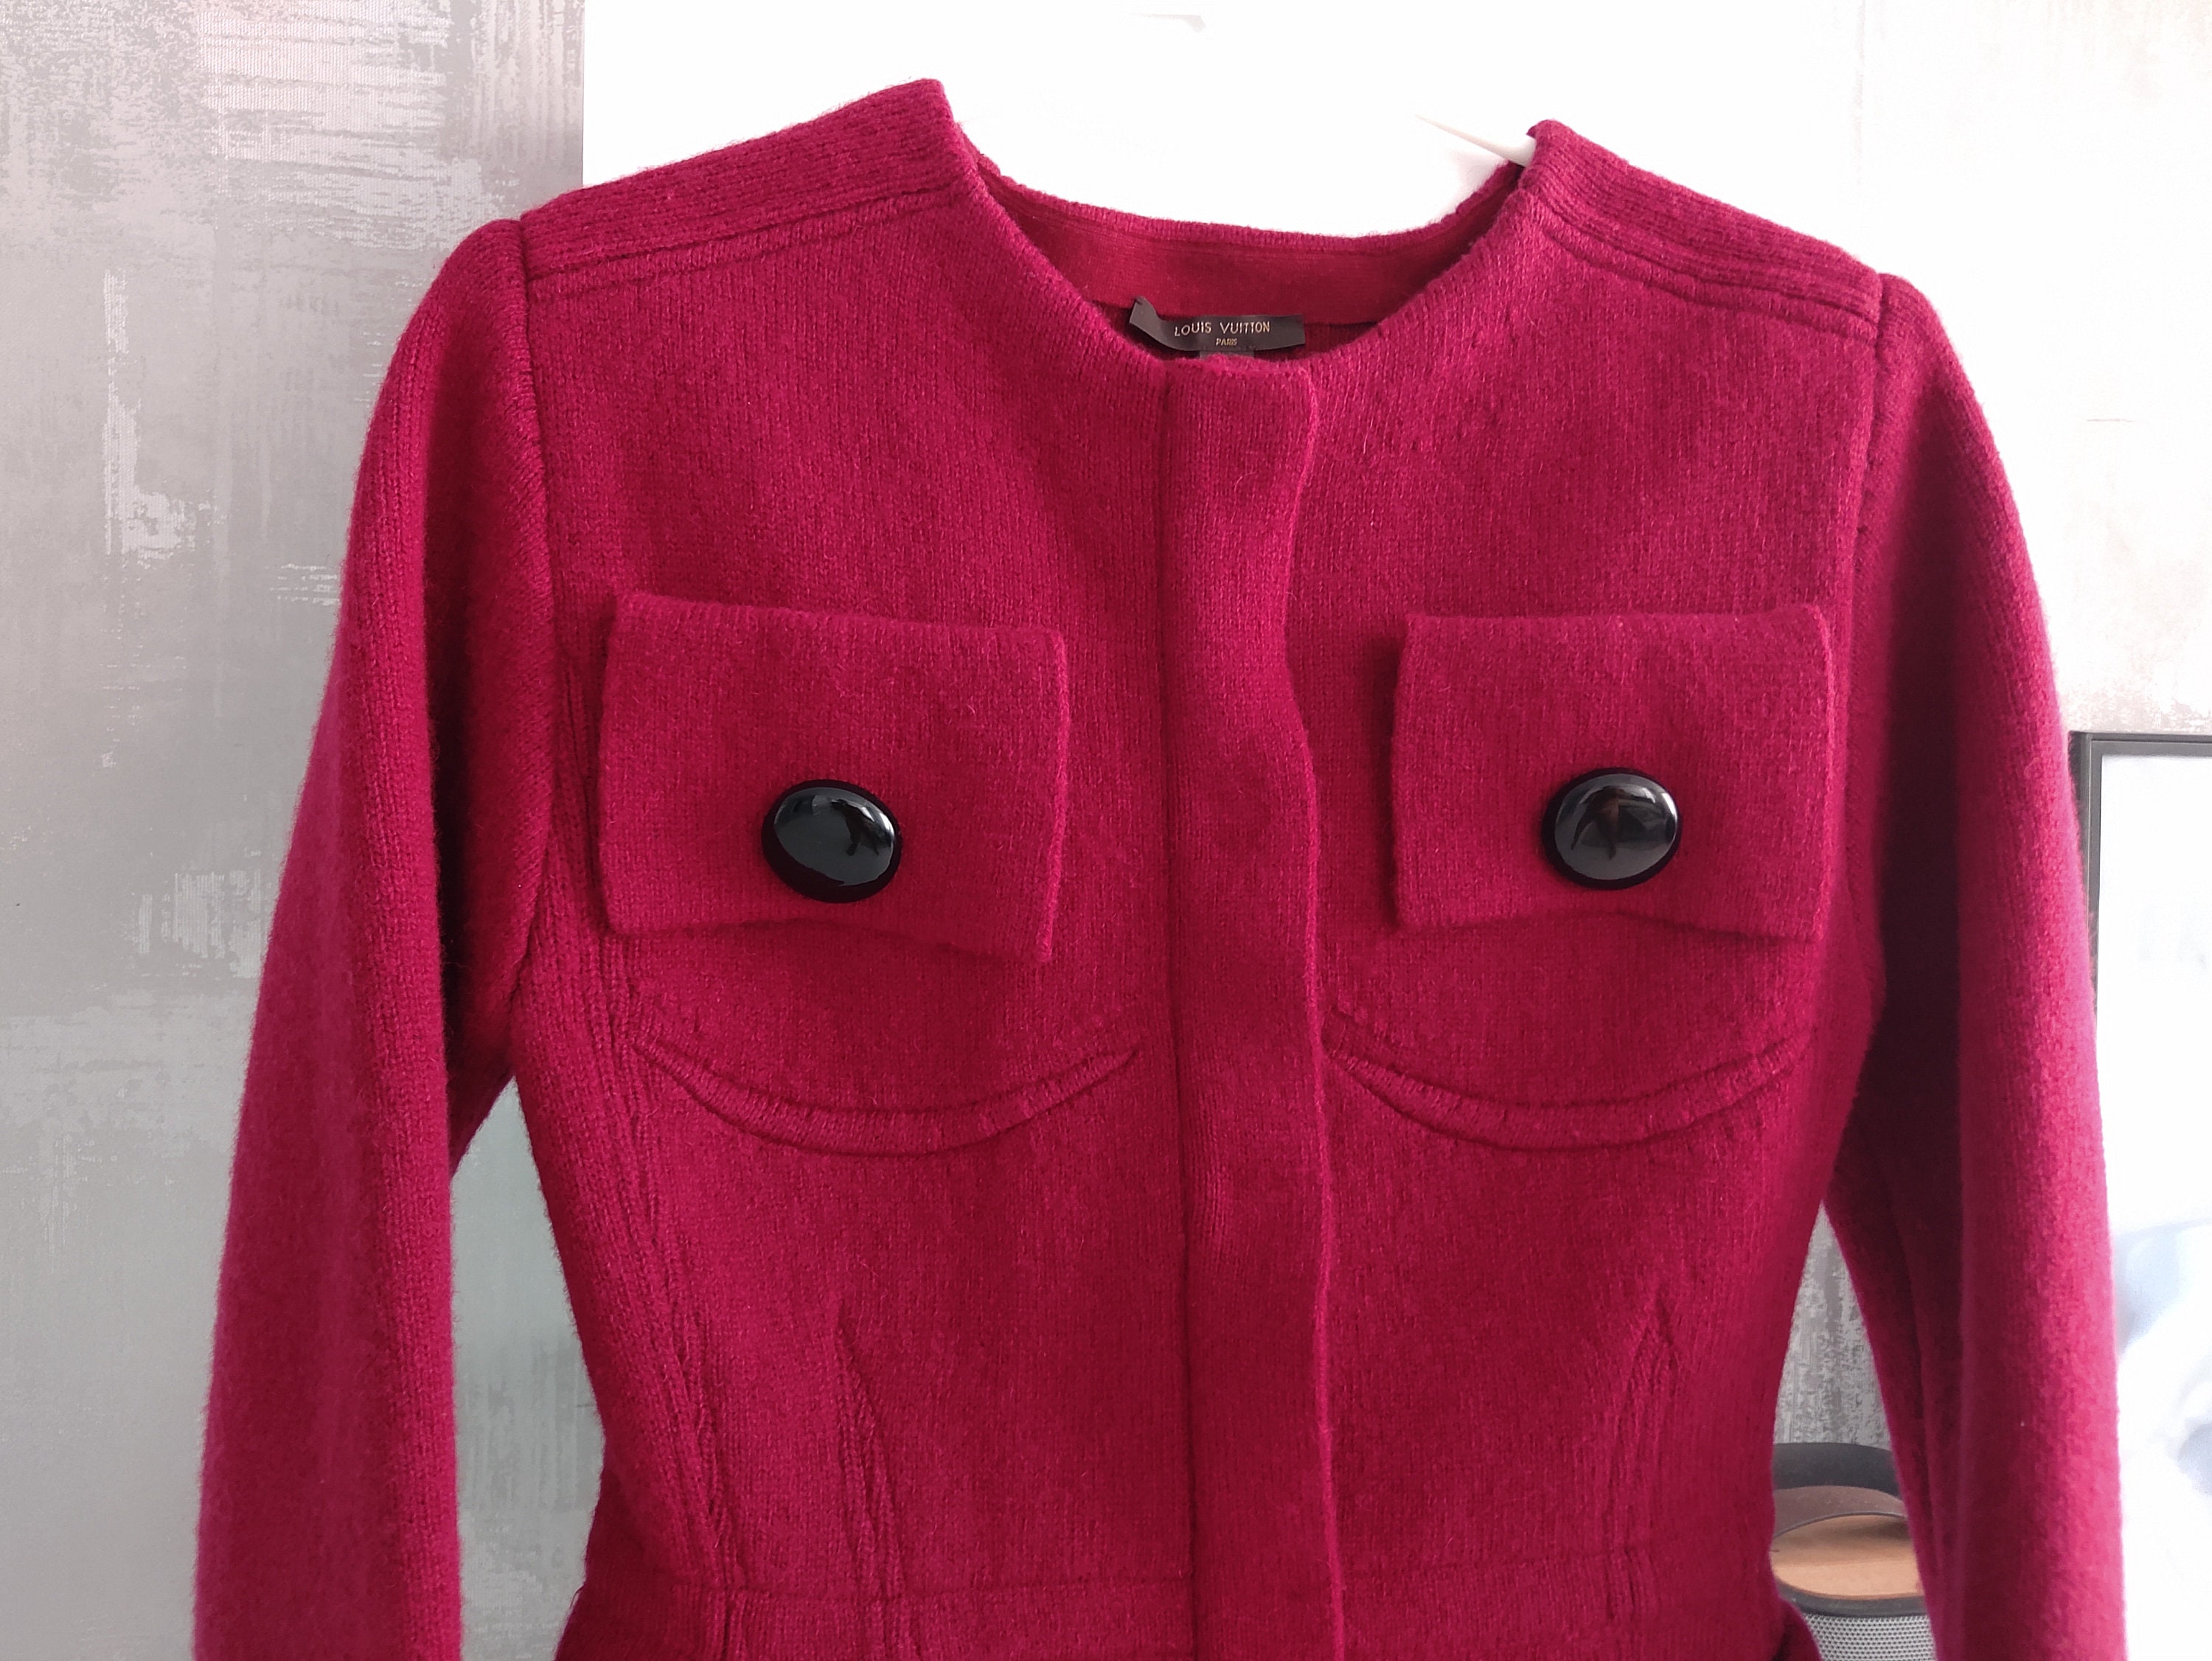 Louis Vuitton Cherry Burgundy Zip Button Wool Blazer Suit 